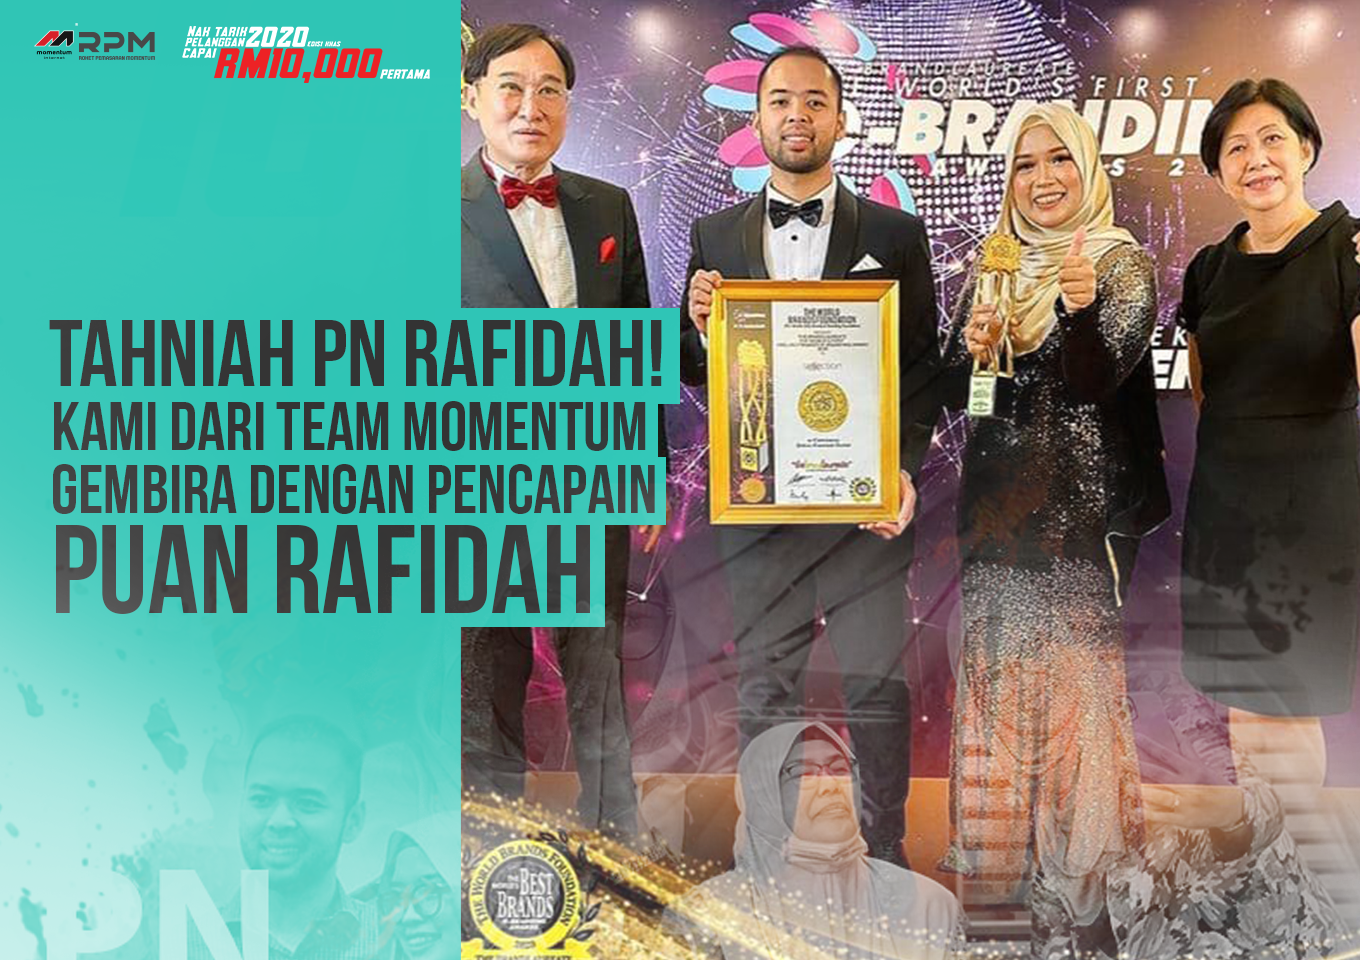 Puan Rafidah